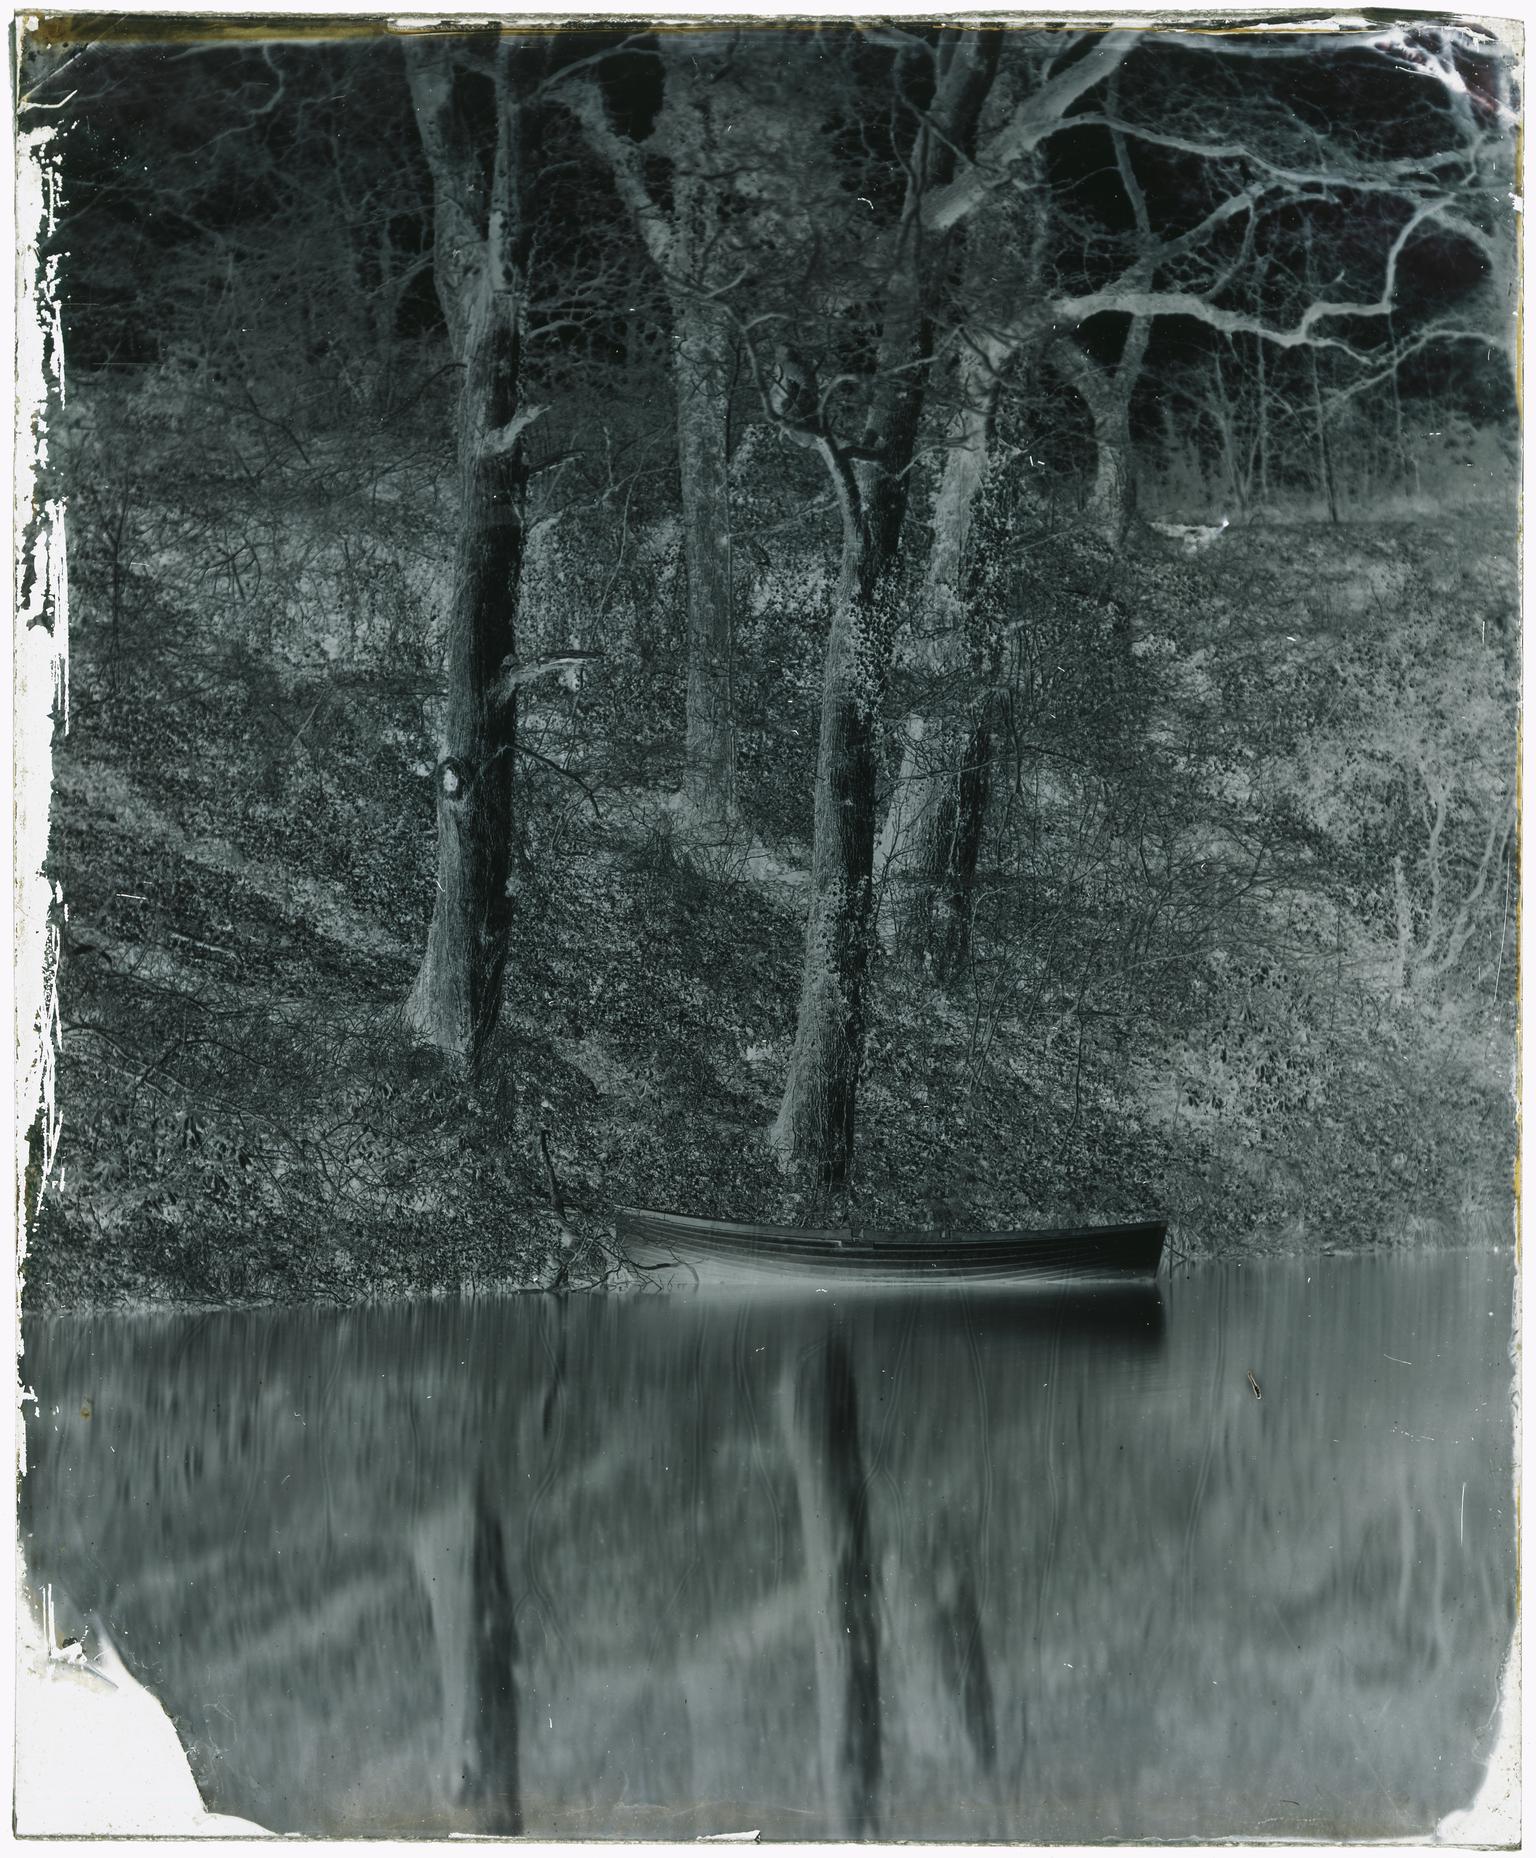 Penllergare, upper lake, glass negative